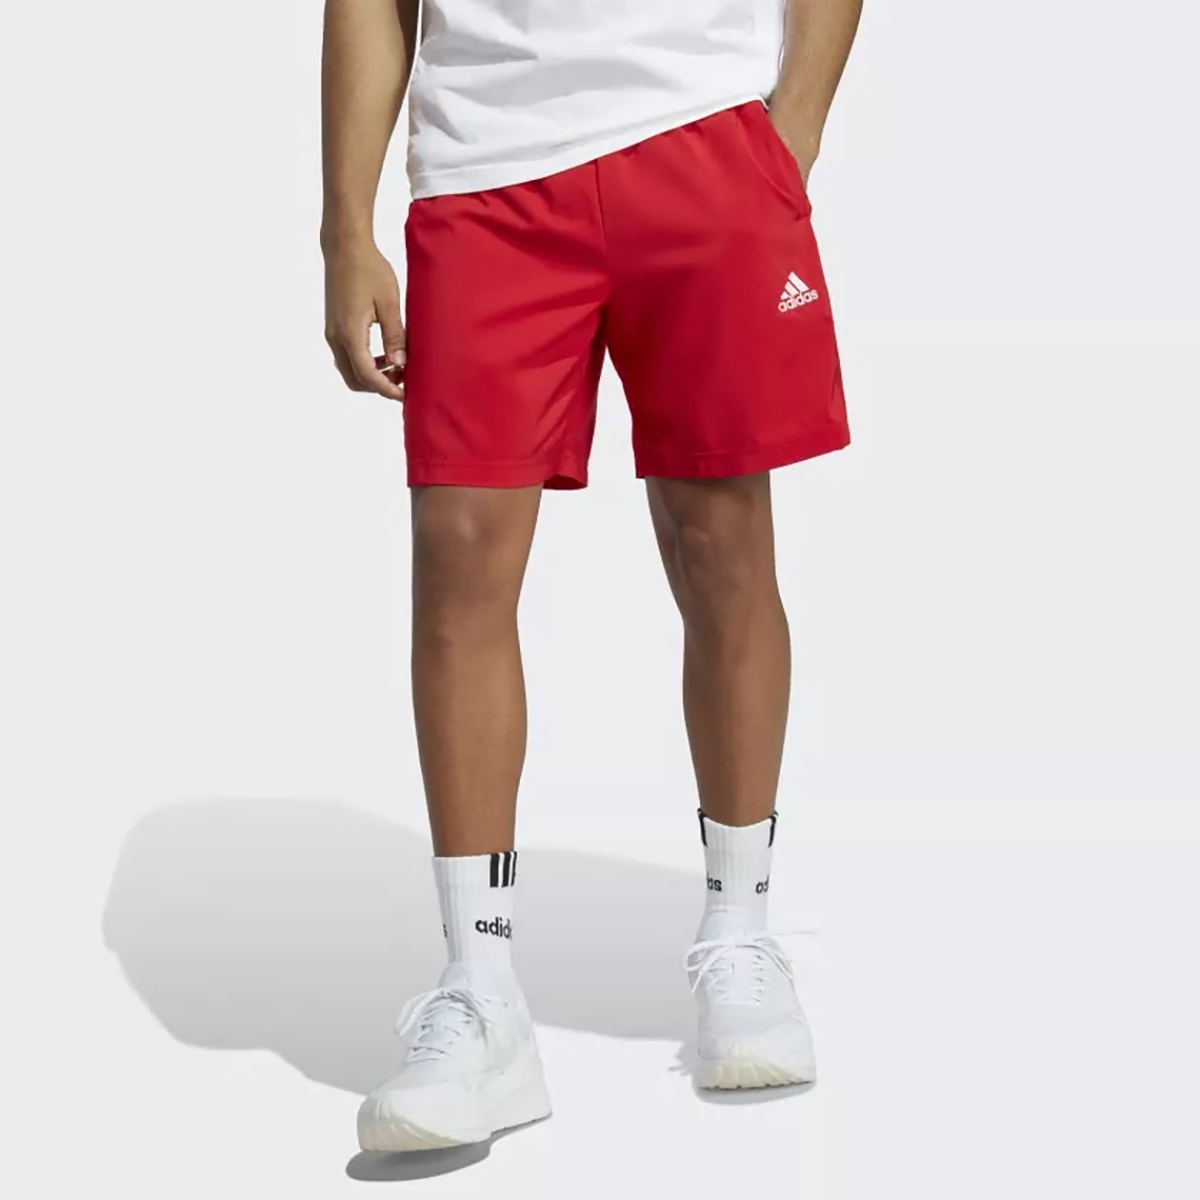 Спортивные шорты Adidas для мужчин, IC1486, размер 2XL, бордово-белые-AETG